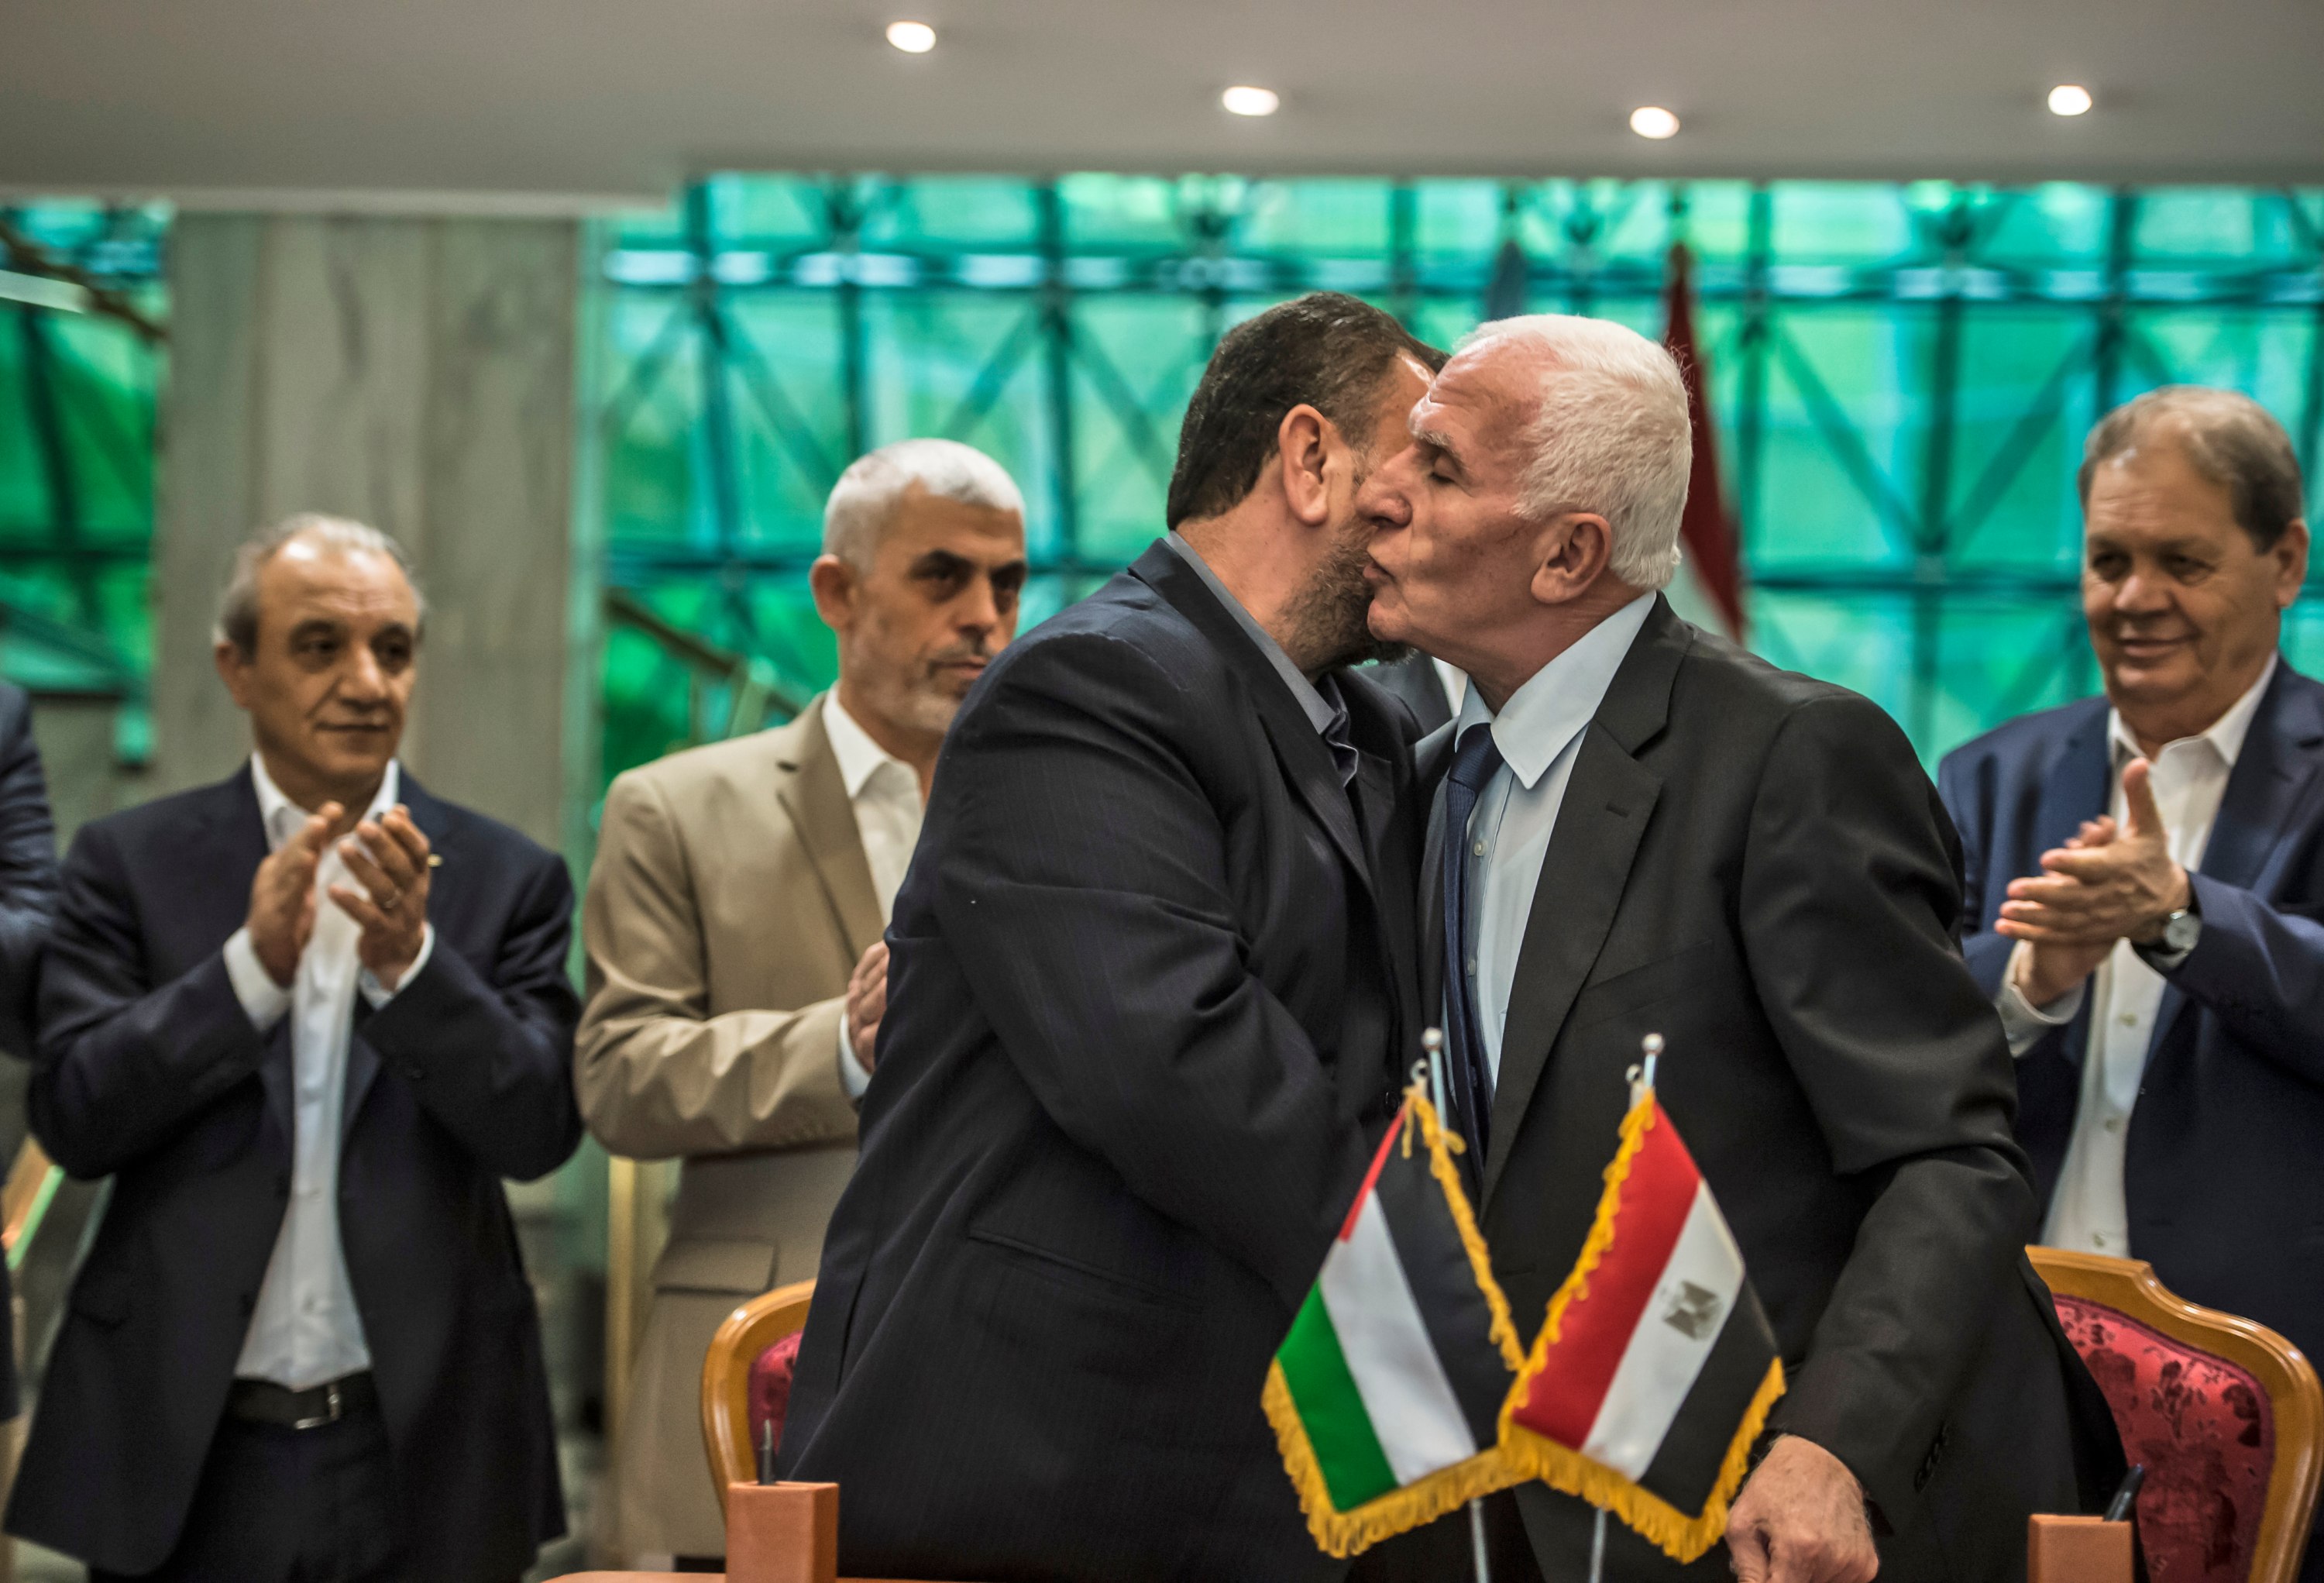 Azzam al-Ahmad du Fatah (à droite) et Saleh al-Aruri du Hamas s’embrassent après la signature d’un accord de réconciliation au Caire, le 12 octobre 2017 (AFP)